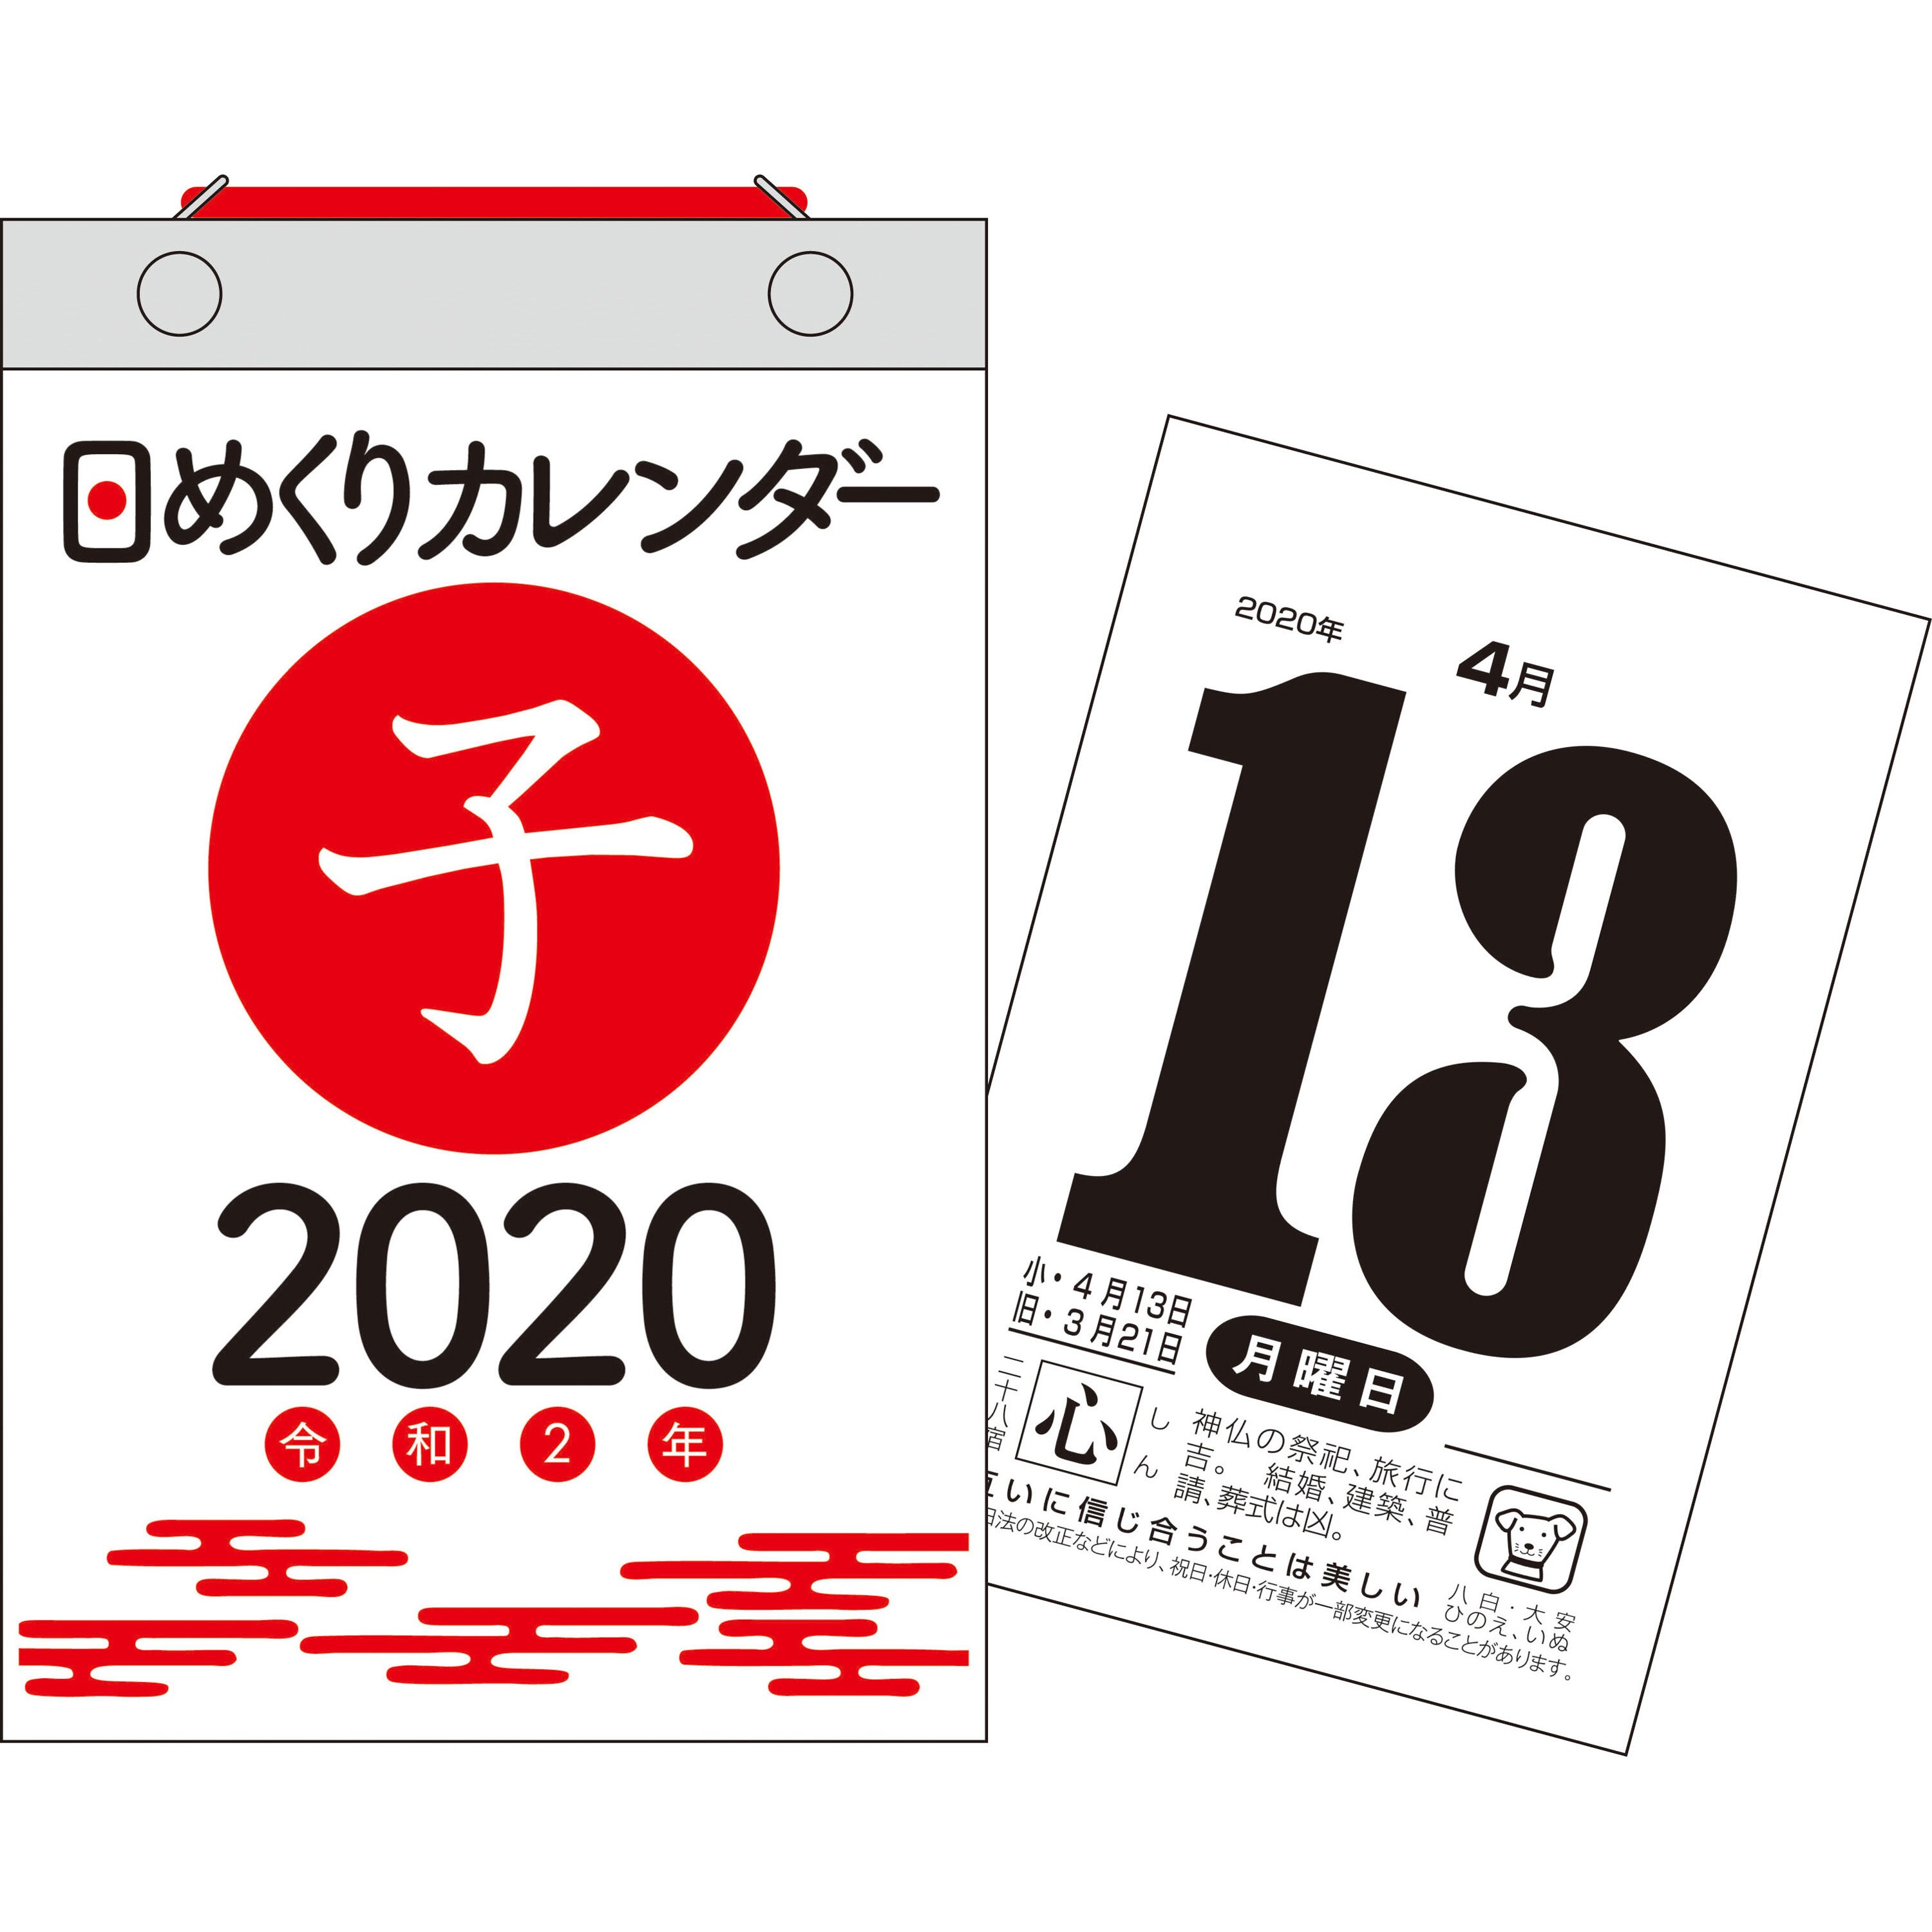 年 日めくりカレンダー 新書サイズ H4 1冊 永岡書店 通販サイトmonotaro